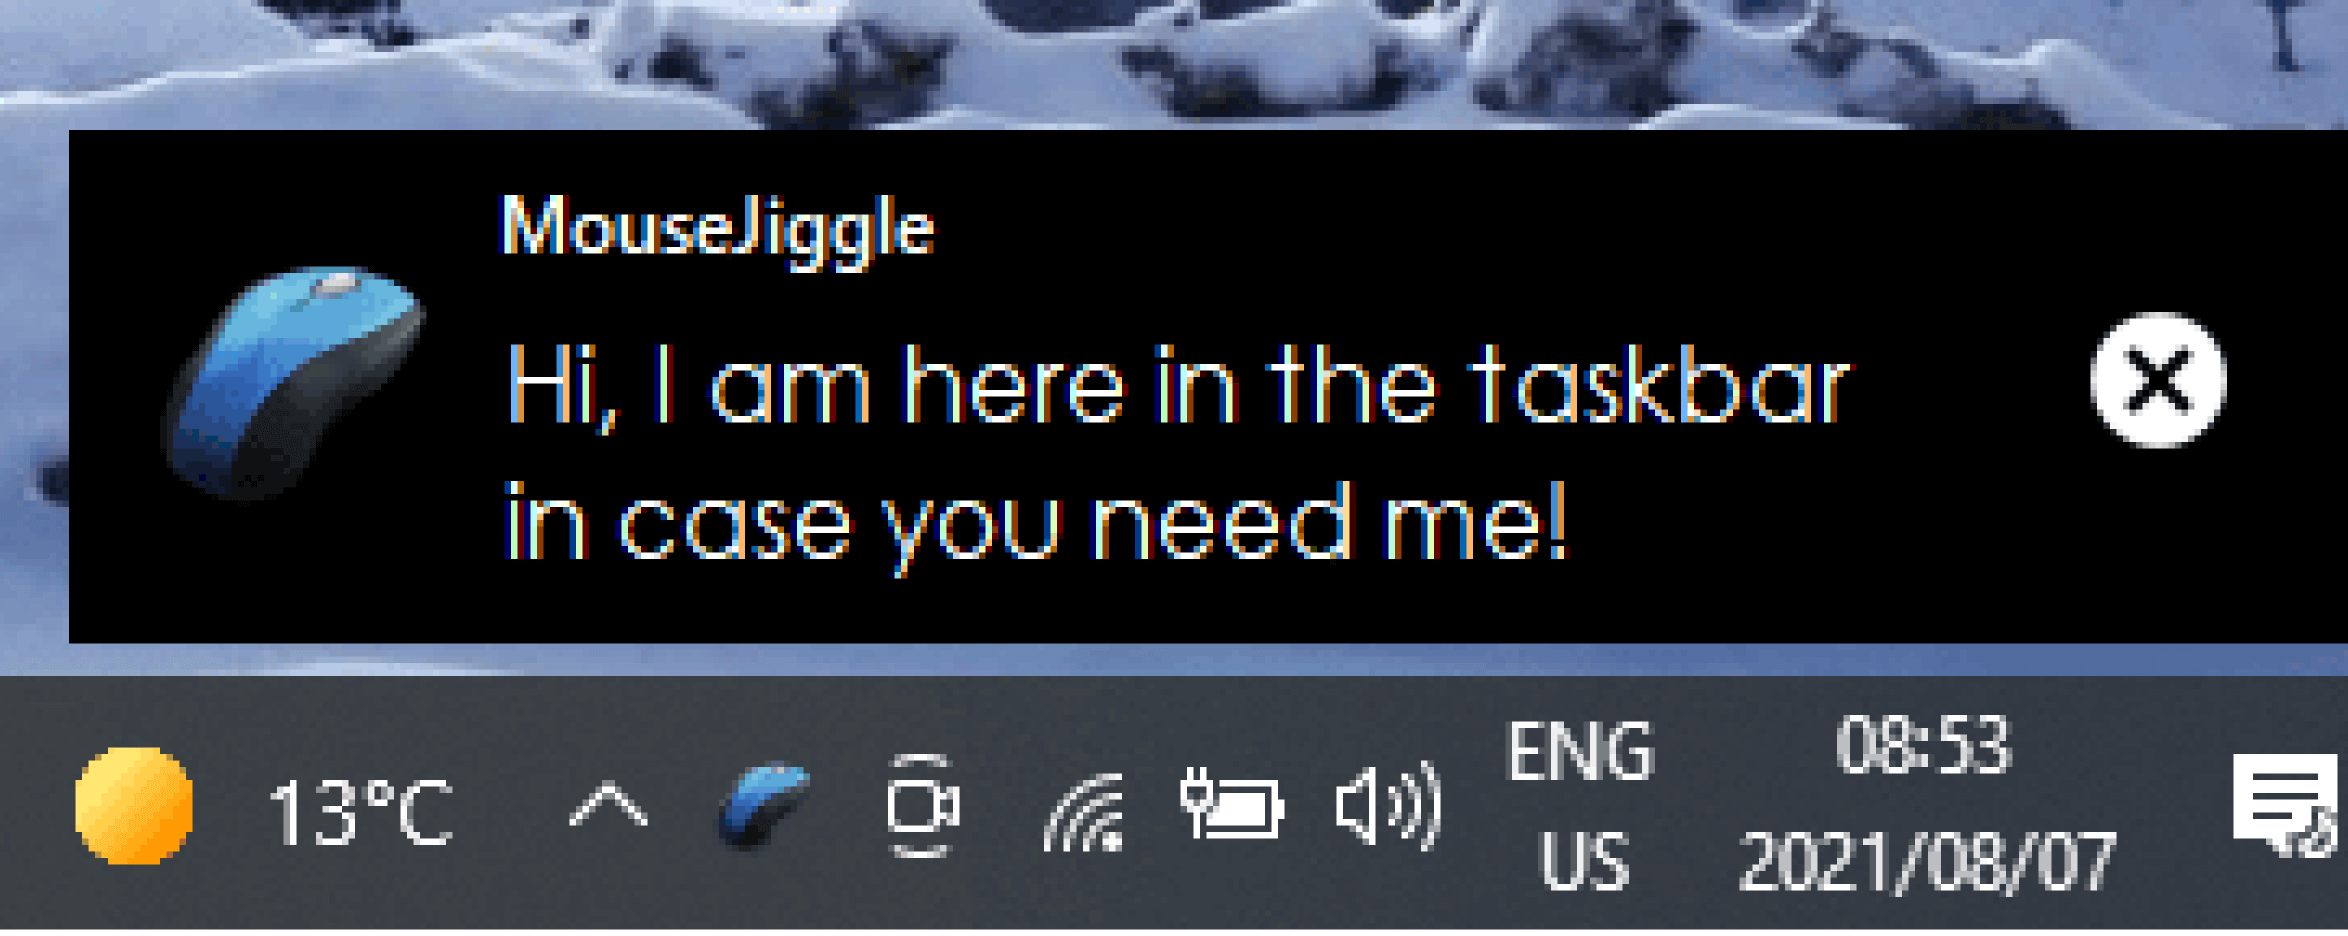 MouseJiggle sera installé dans votre barre des tâches en bas à droite de votre écran.